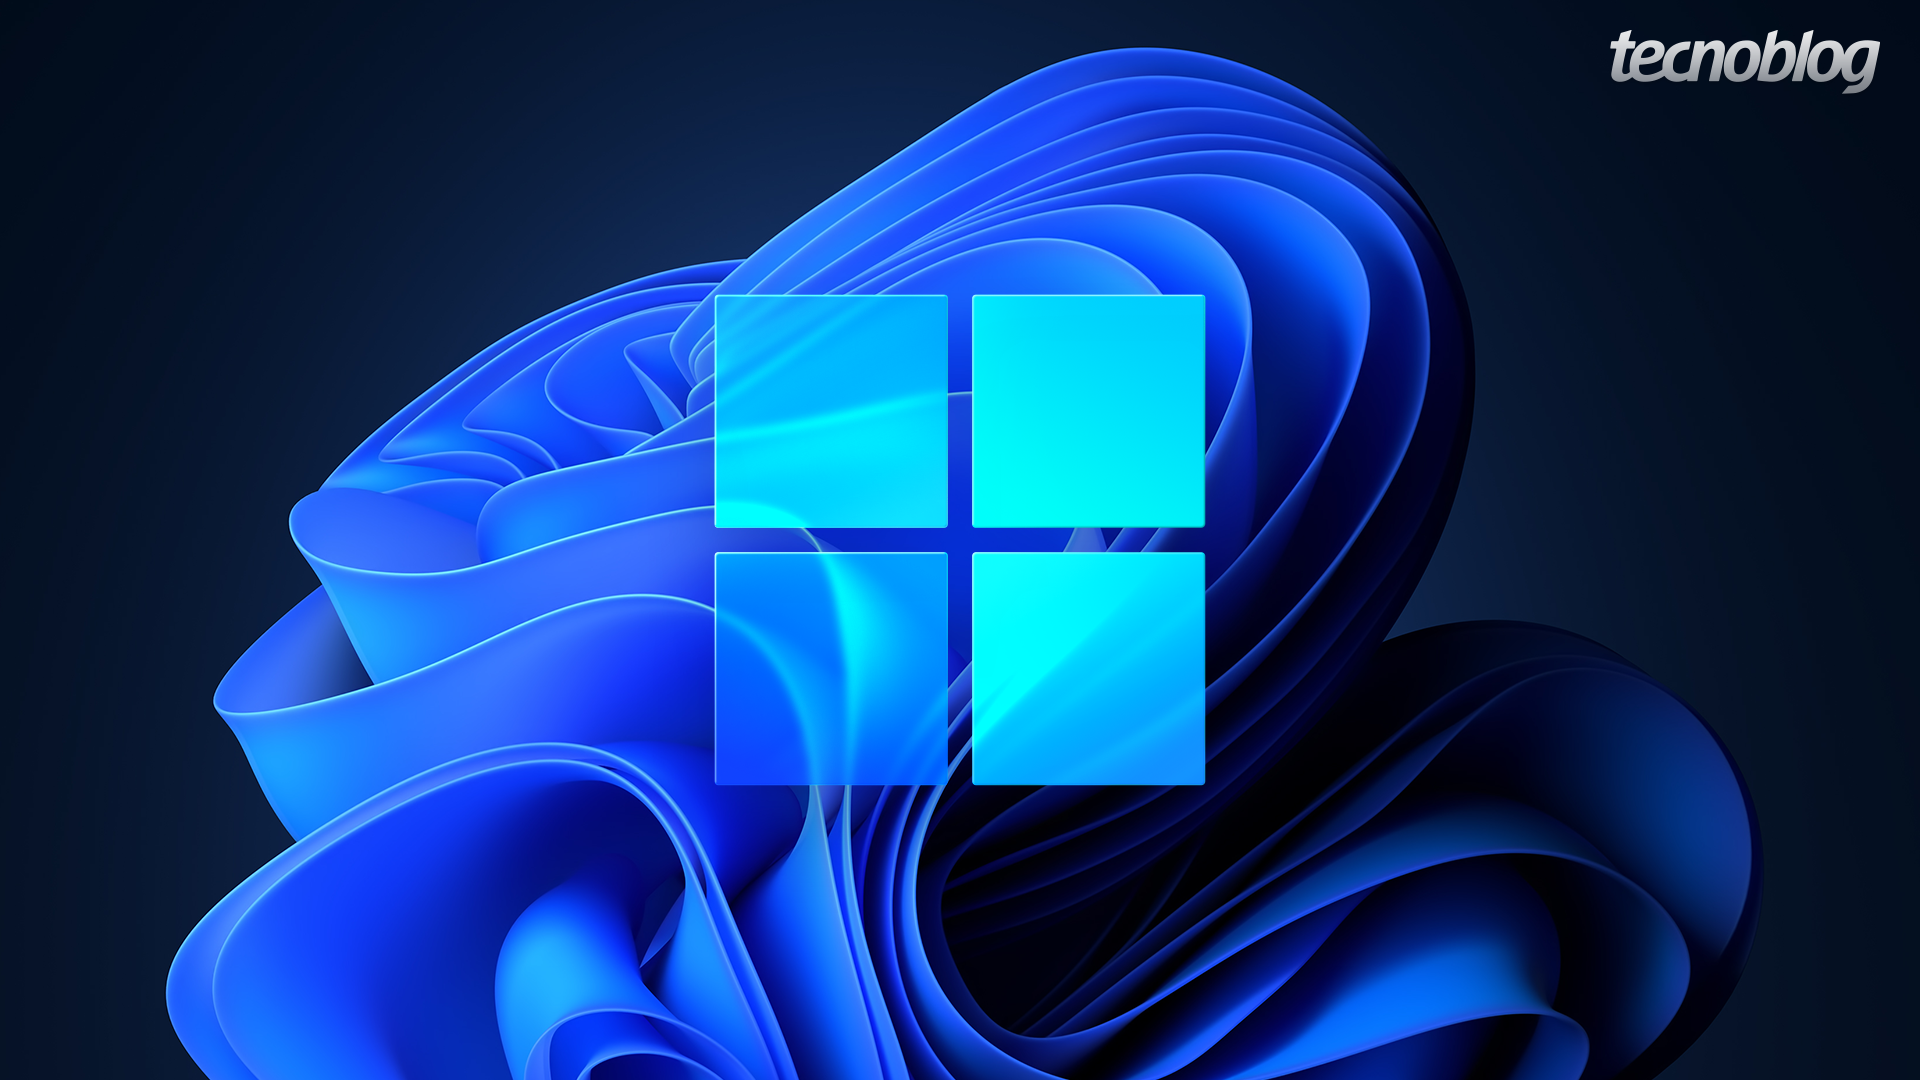 Windows 7 terá atualização gratuita para o Windows 11, mas há um